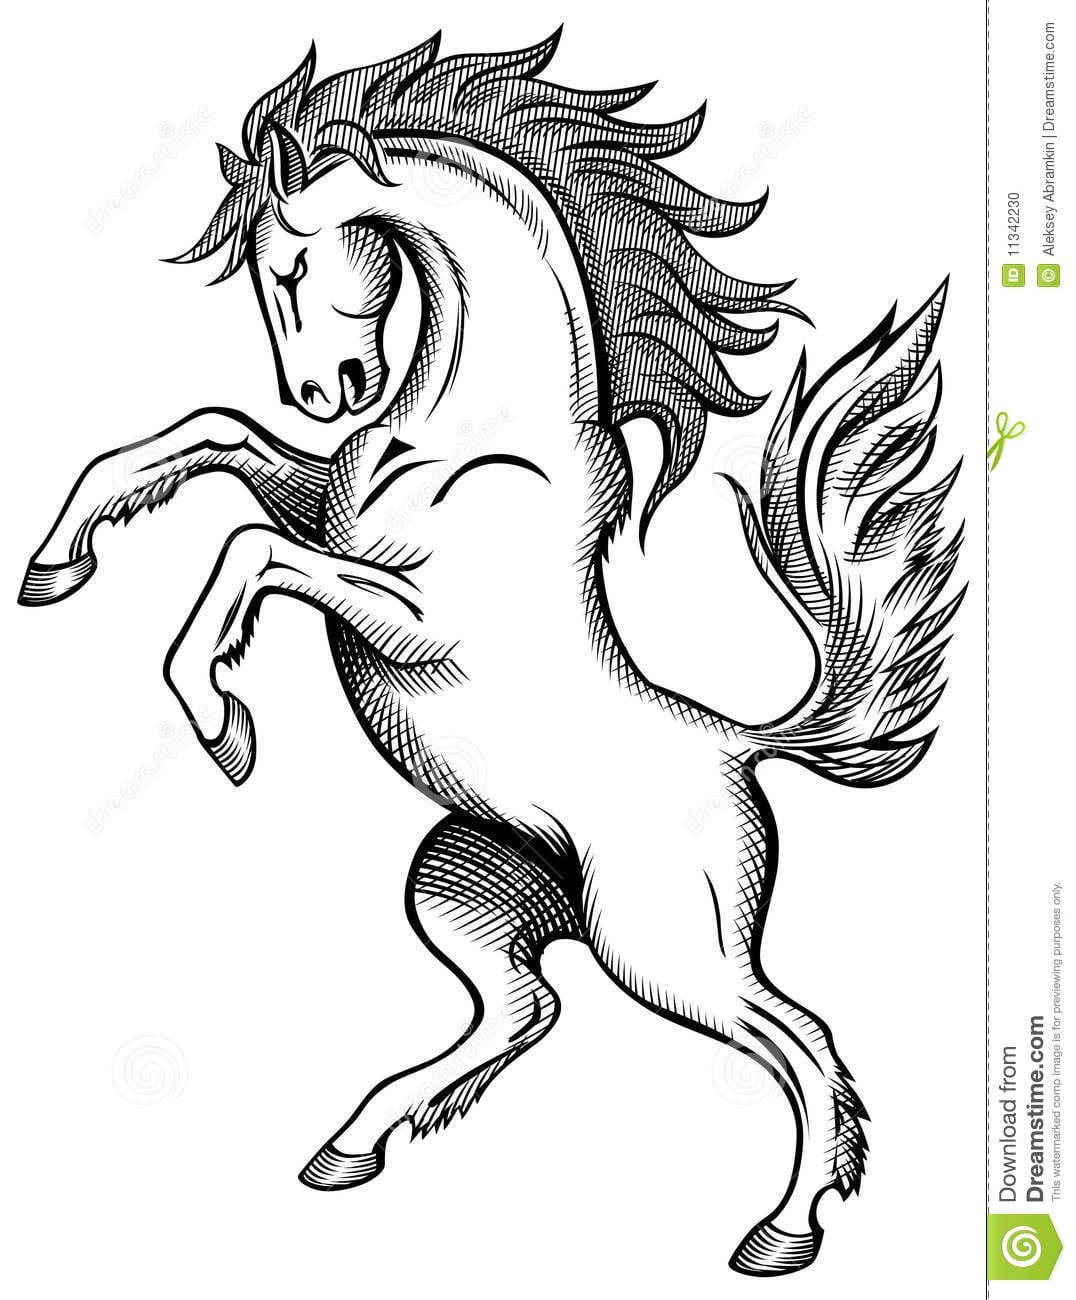 Imagens De Cavalos Para Desenhar